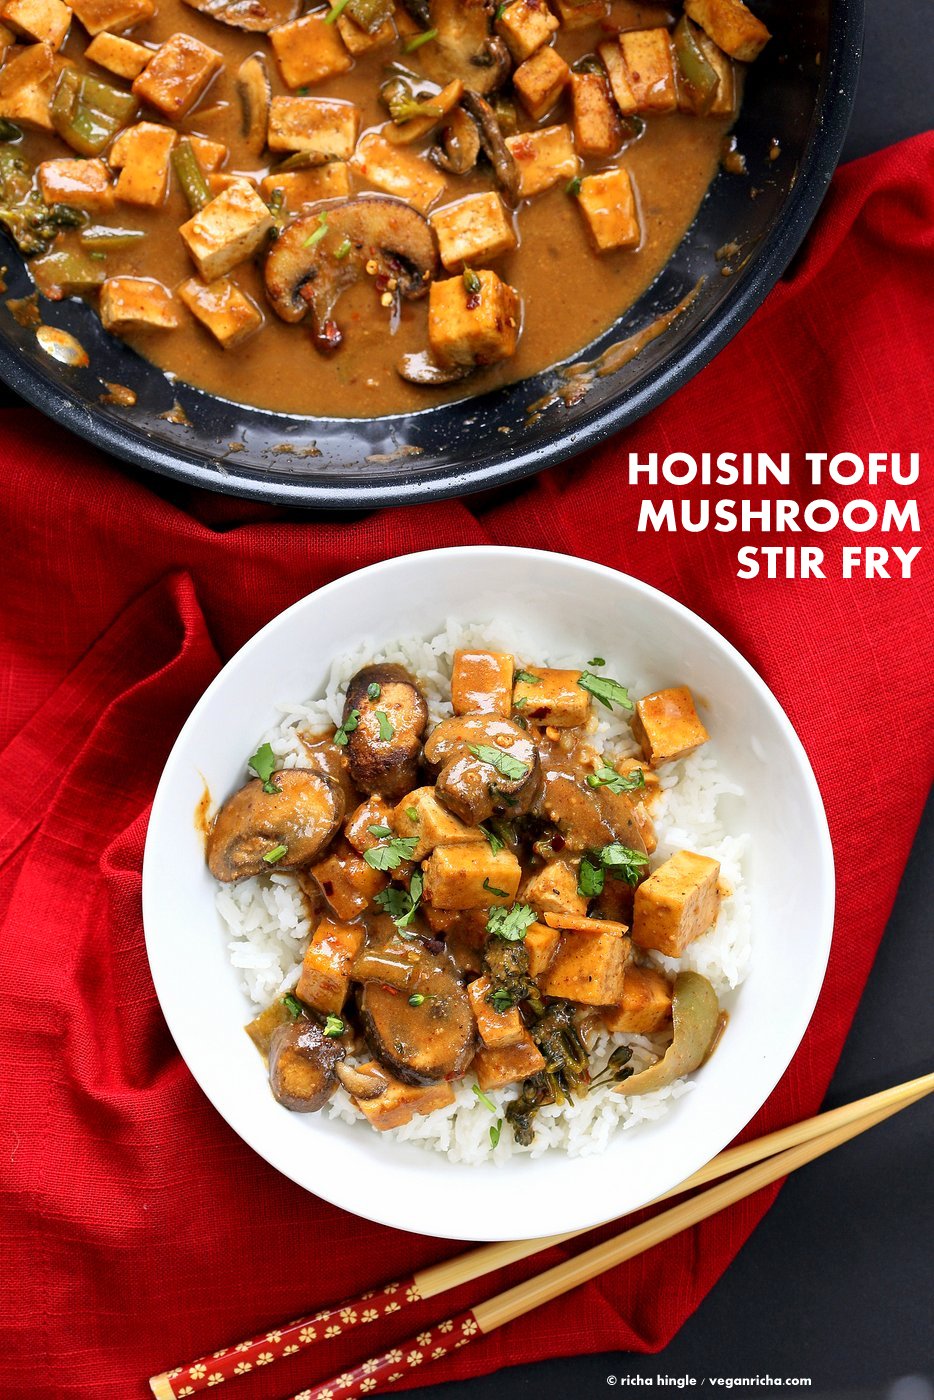 Hoisin Tofu Mushroom Stir Fry